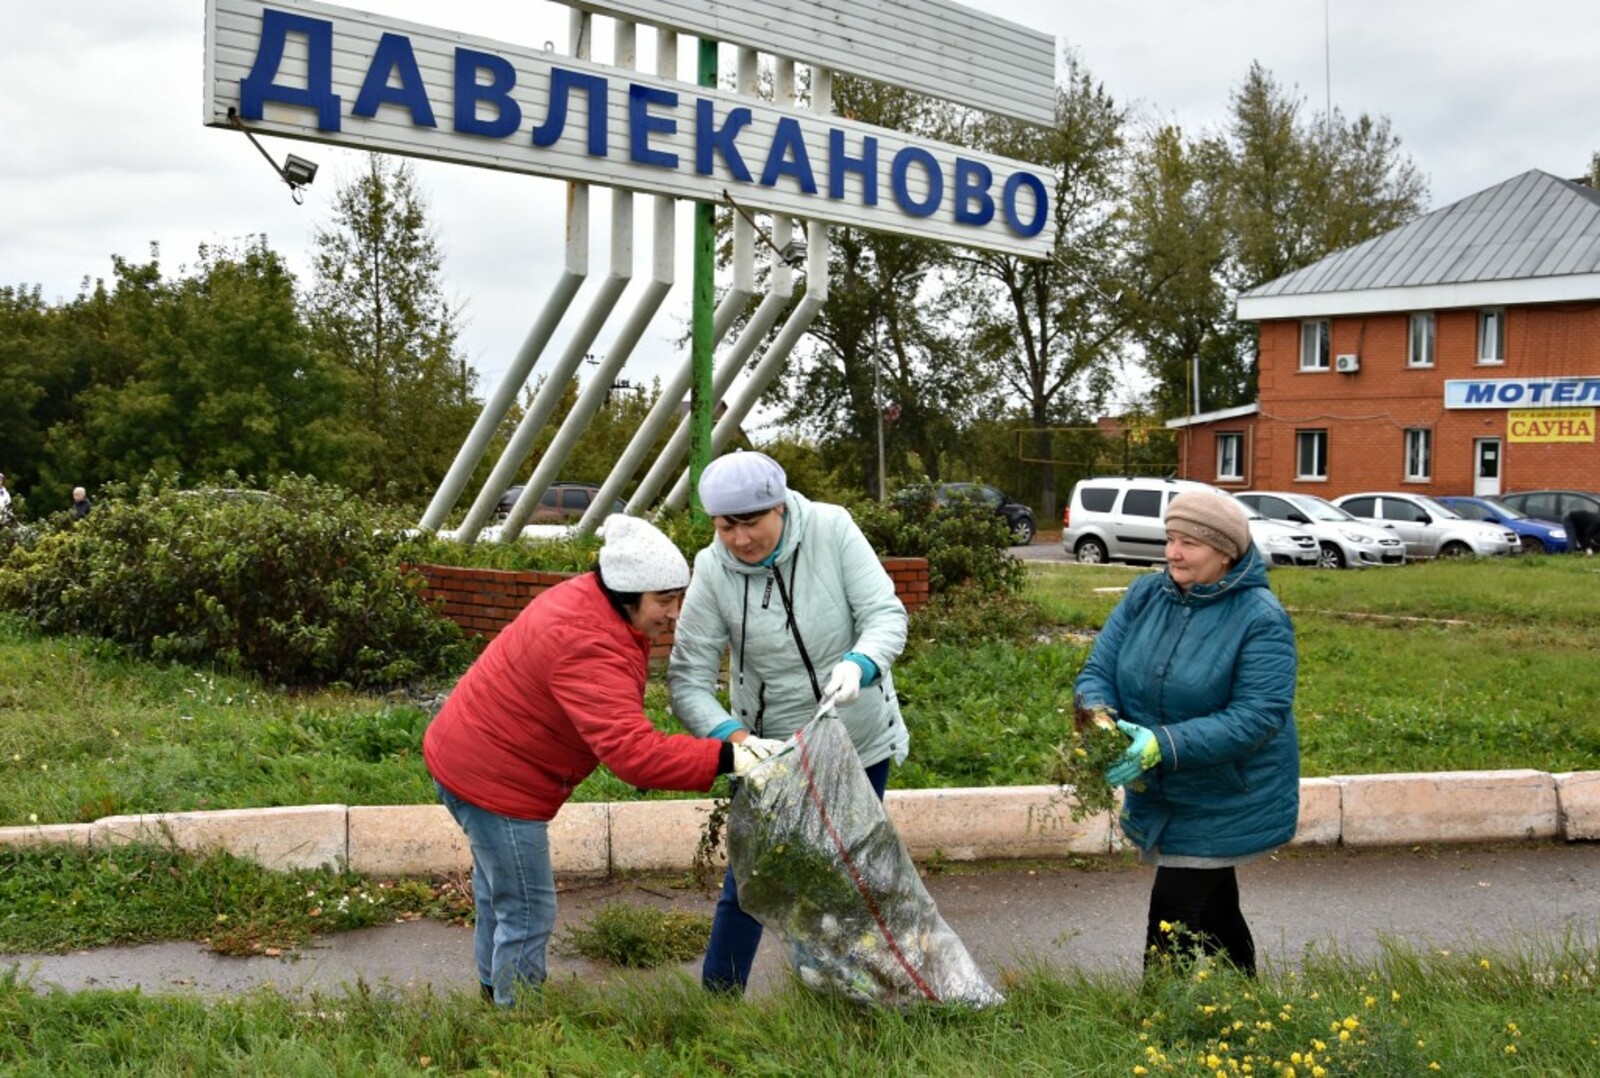 Давлеканово включилось  во Всероссийскую акцию чистоты.